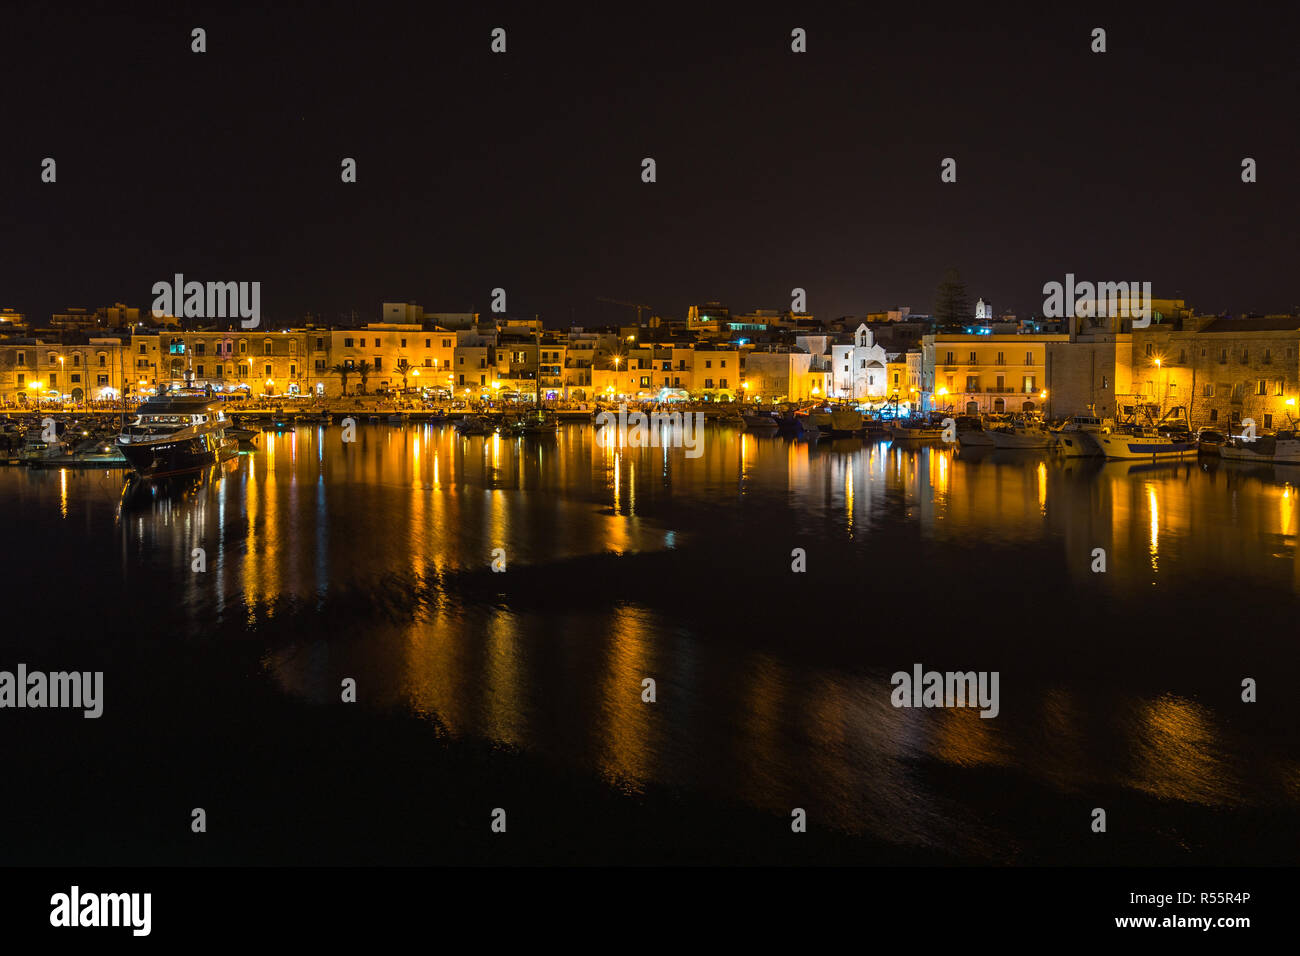 Vue de nuit bord de l'eau et le port de Trani, Pouilles, Italie Banque D'Images